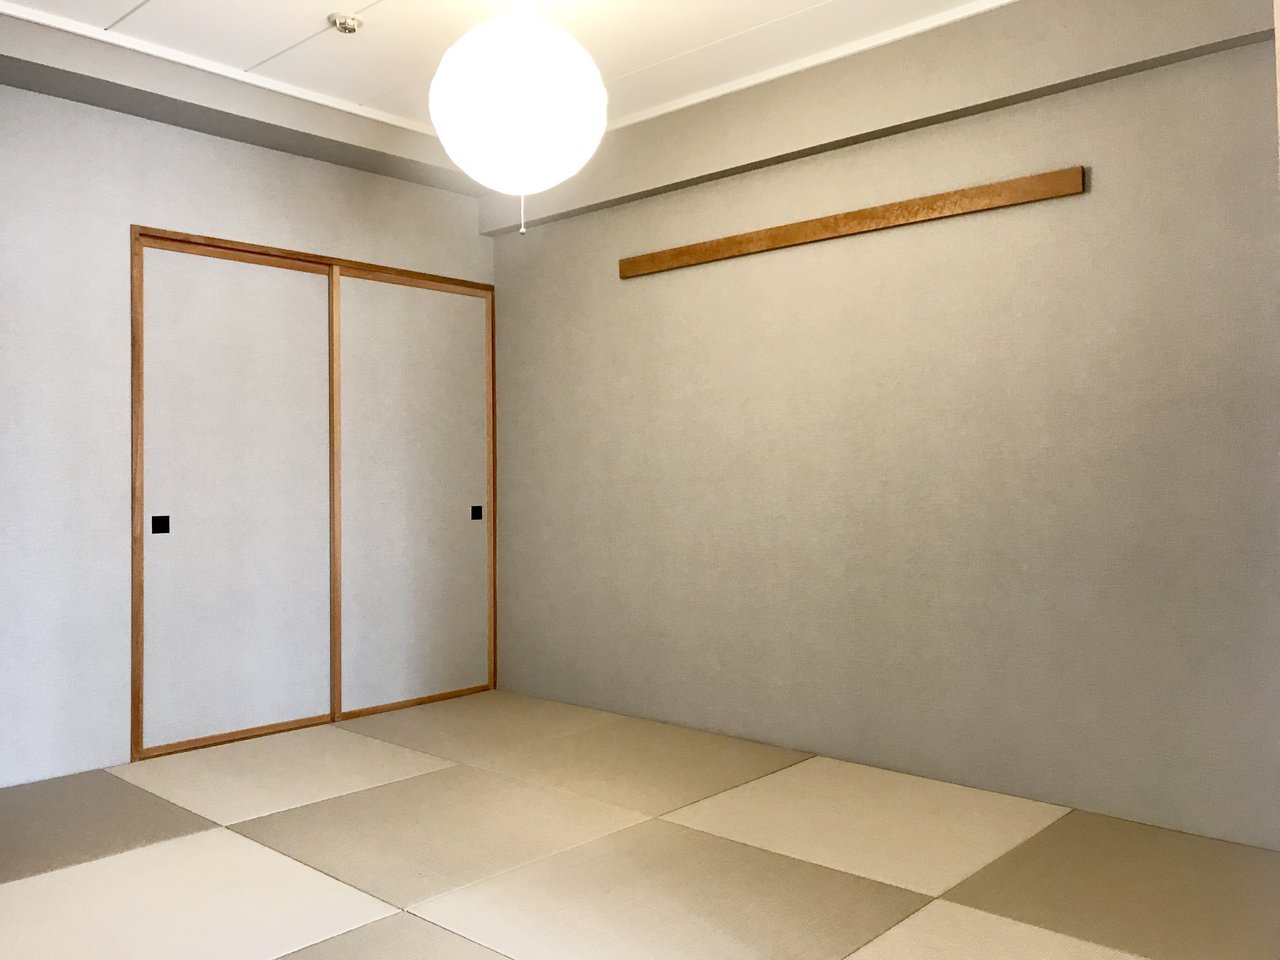 こちらも和室の残るお部屋。ハプティックが監修したナチュラルリノベーションのお部屋です。壁紙もシックなグレーに張り替えられていて、先ほどの部屋とも少しまた違う雰囲気ですね。